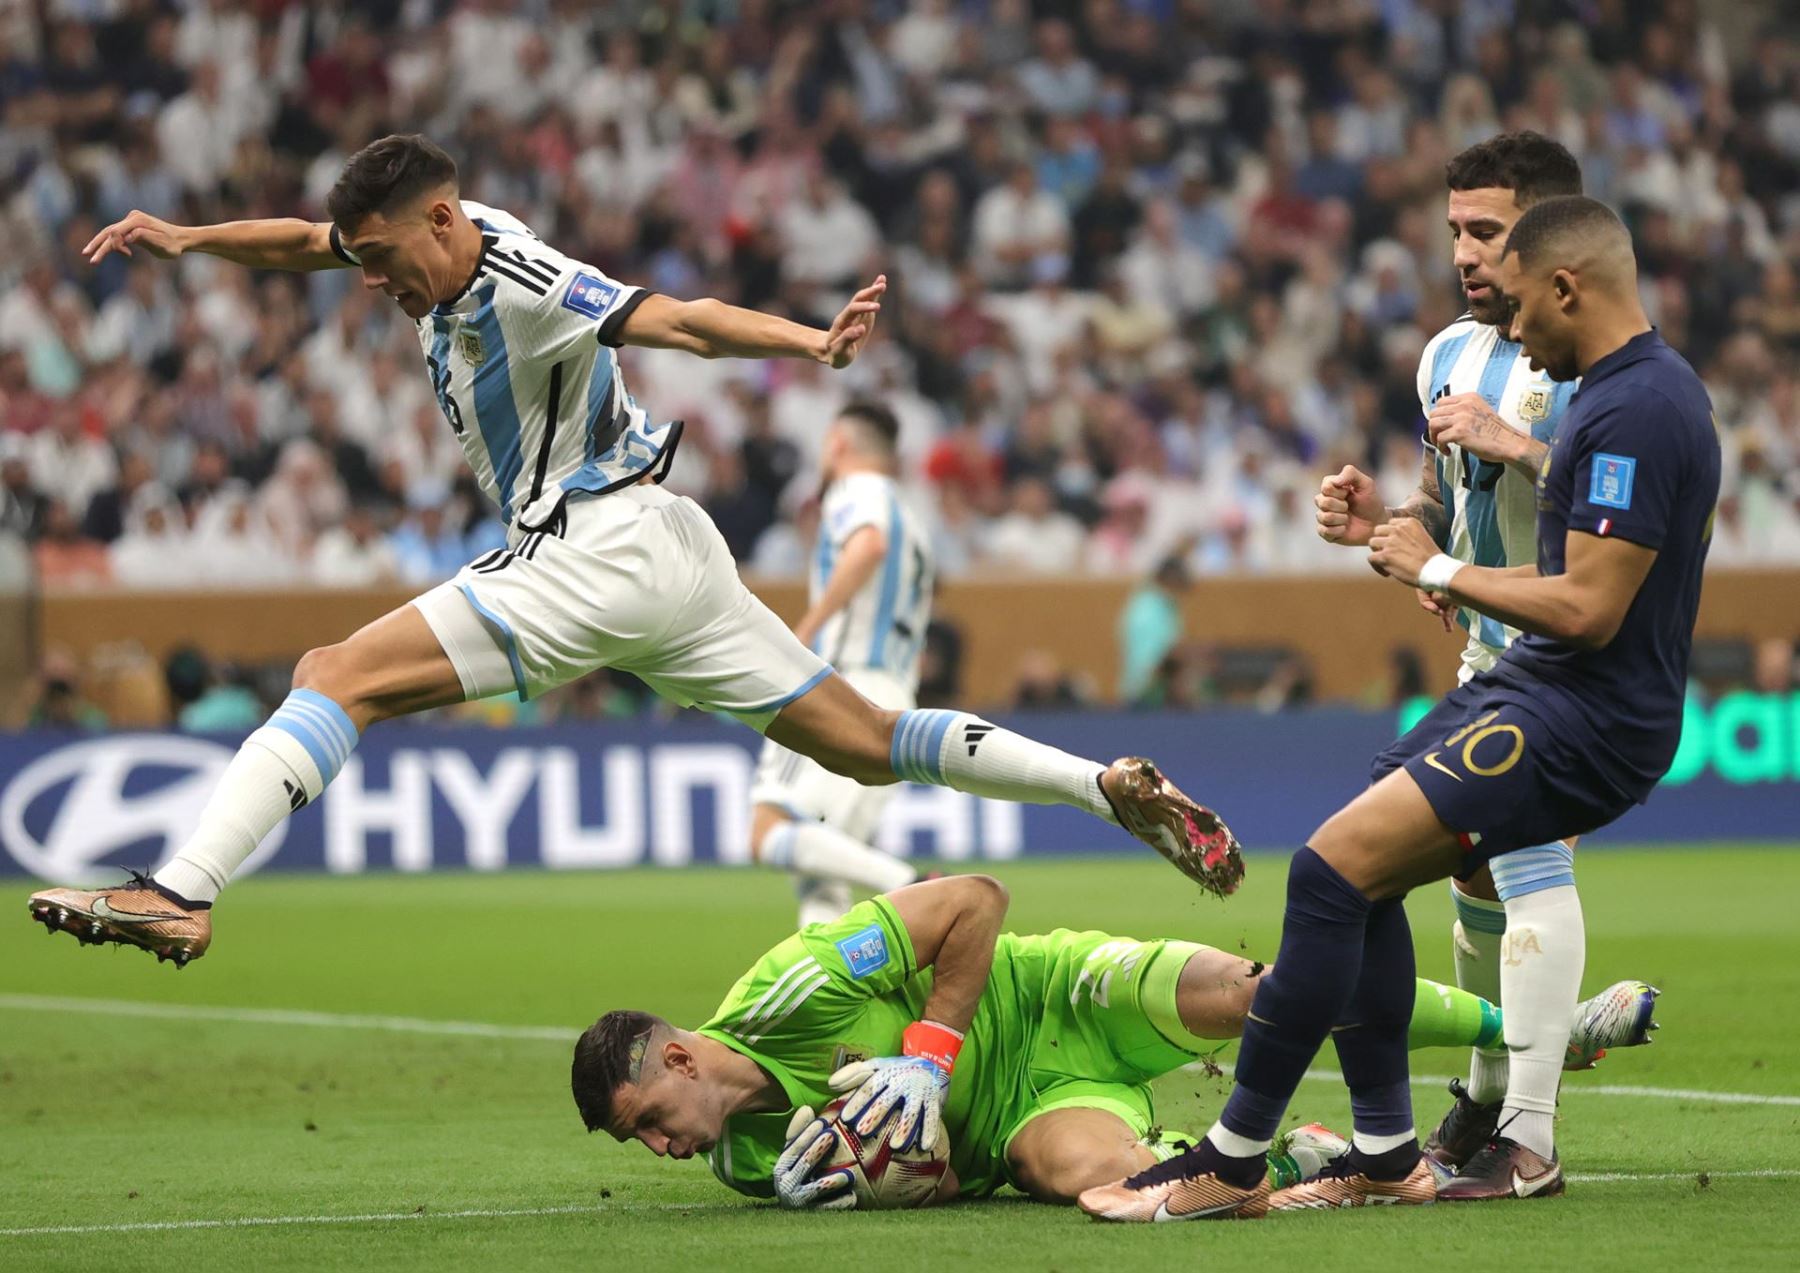 El arquero argentino Damián Martínez salva el balón junto a Kylian Mbappé durante la final de la Copa Mundial de la FIFA 2022 entre Argentina y Francia en el Estadio Lusail de Lusail, Qatar, el 18 de diciembre de 2022. 
Foto: EFE